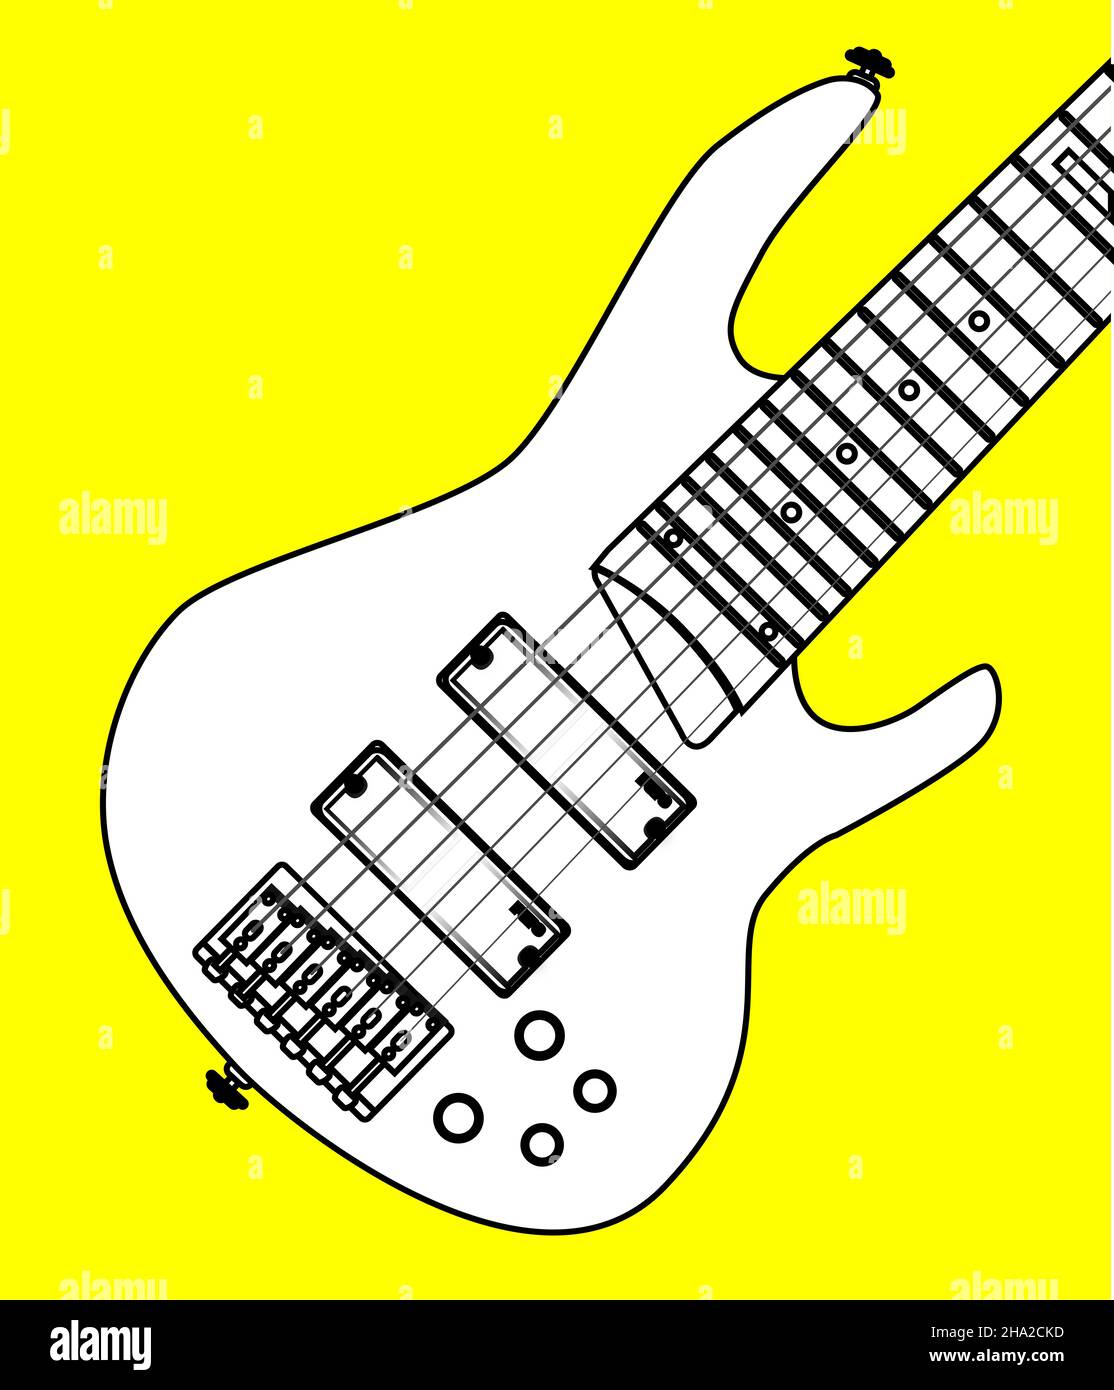 Une guitare basse générique à six cordes sur fond jaune vif Photo Stock -  Alamy